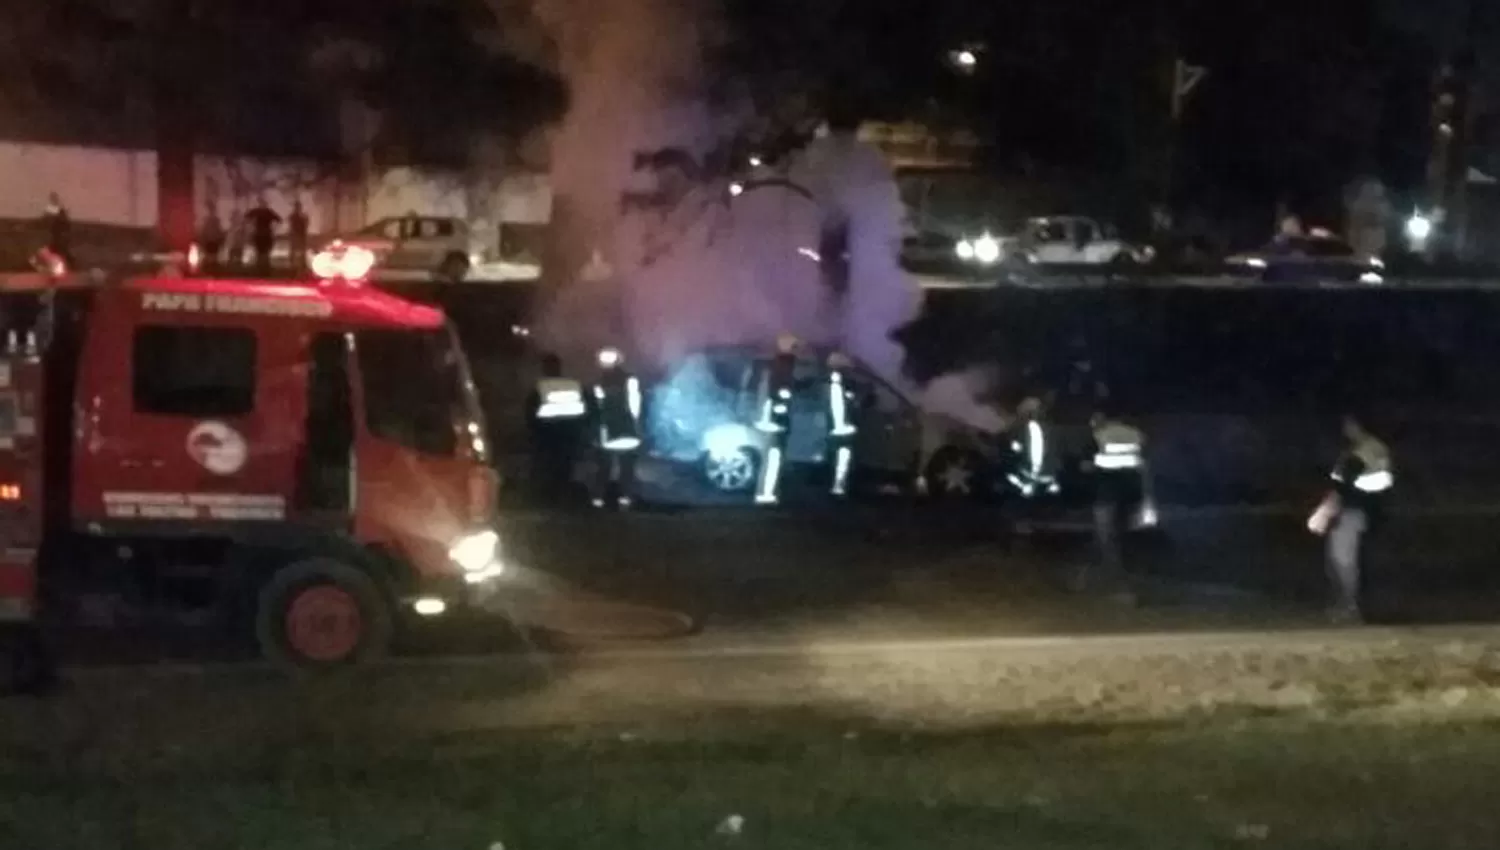 CONTROLADO. Aunque los bomberos apagaron las llamas, los restos del auto quedaron reducidos a hierros retorcidos. FOTO ENVIADA POR UN LECTOR